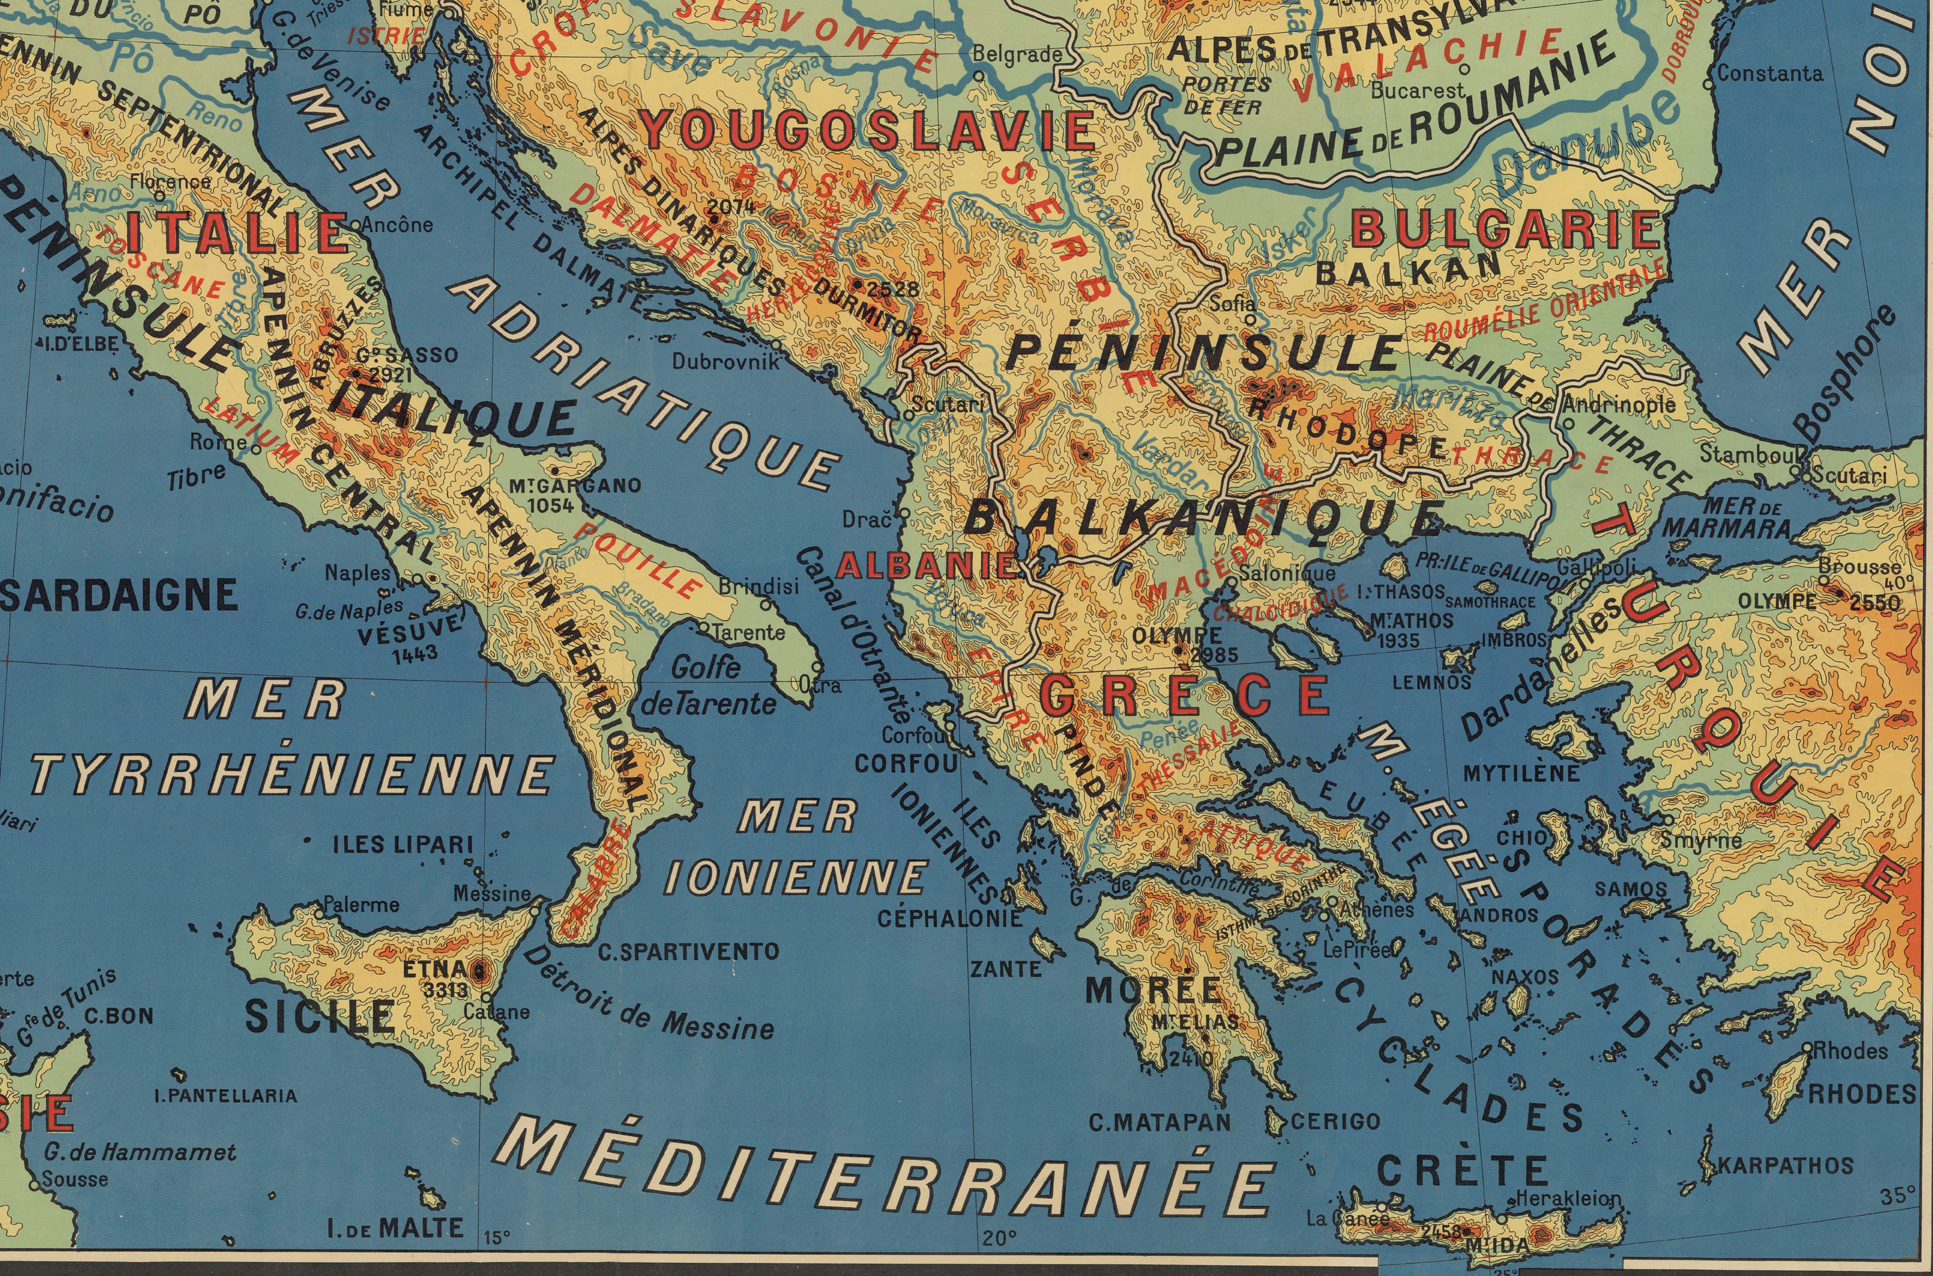 Europe centrale et méridionale (carte physique 1 : 2 500 000) par Jean Brunhes. Source gallica.bnf.fr / BnF